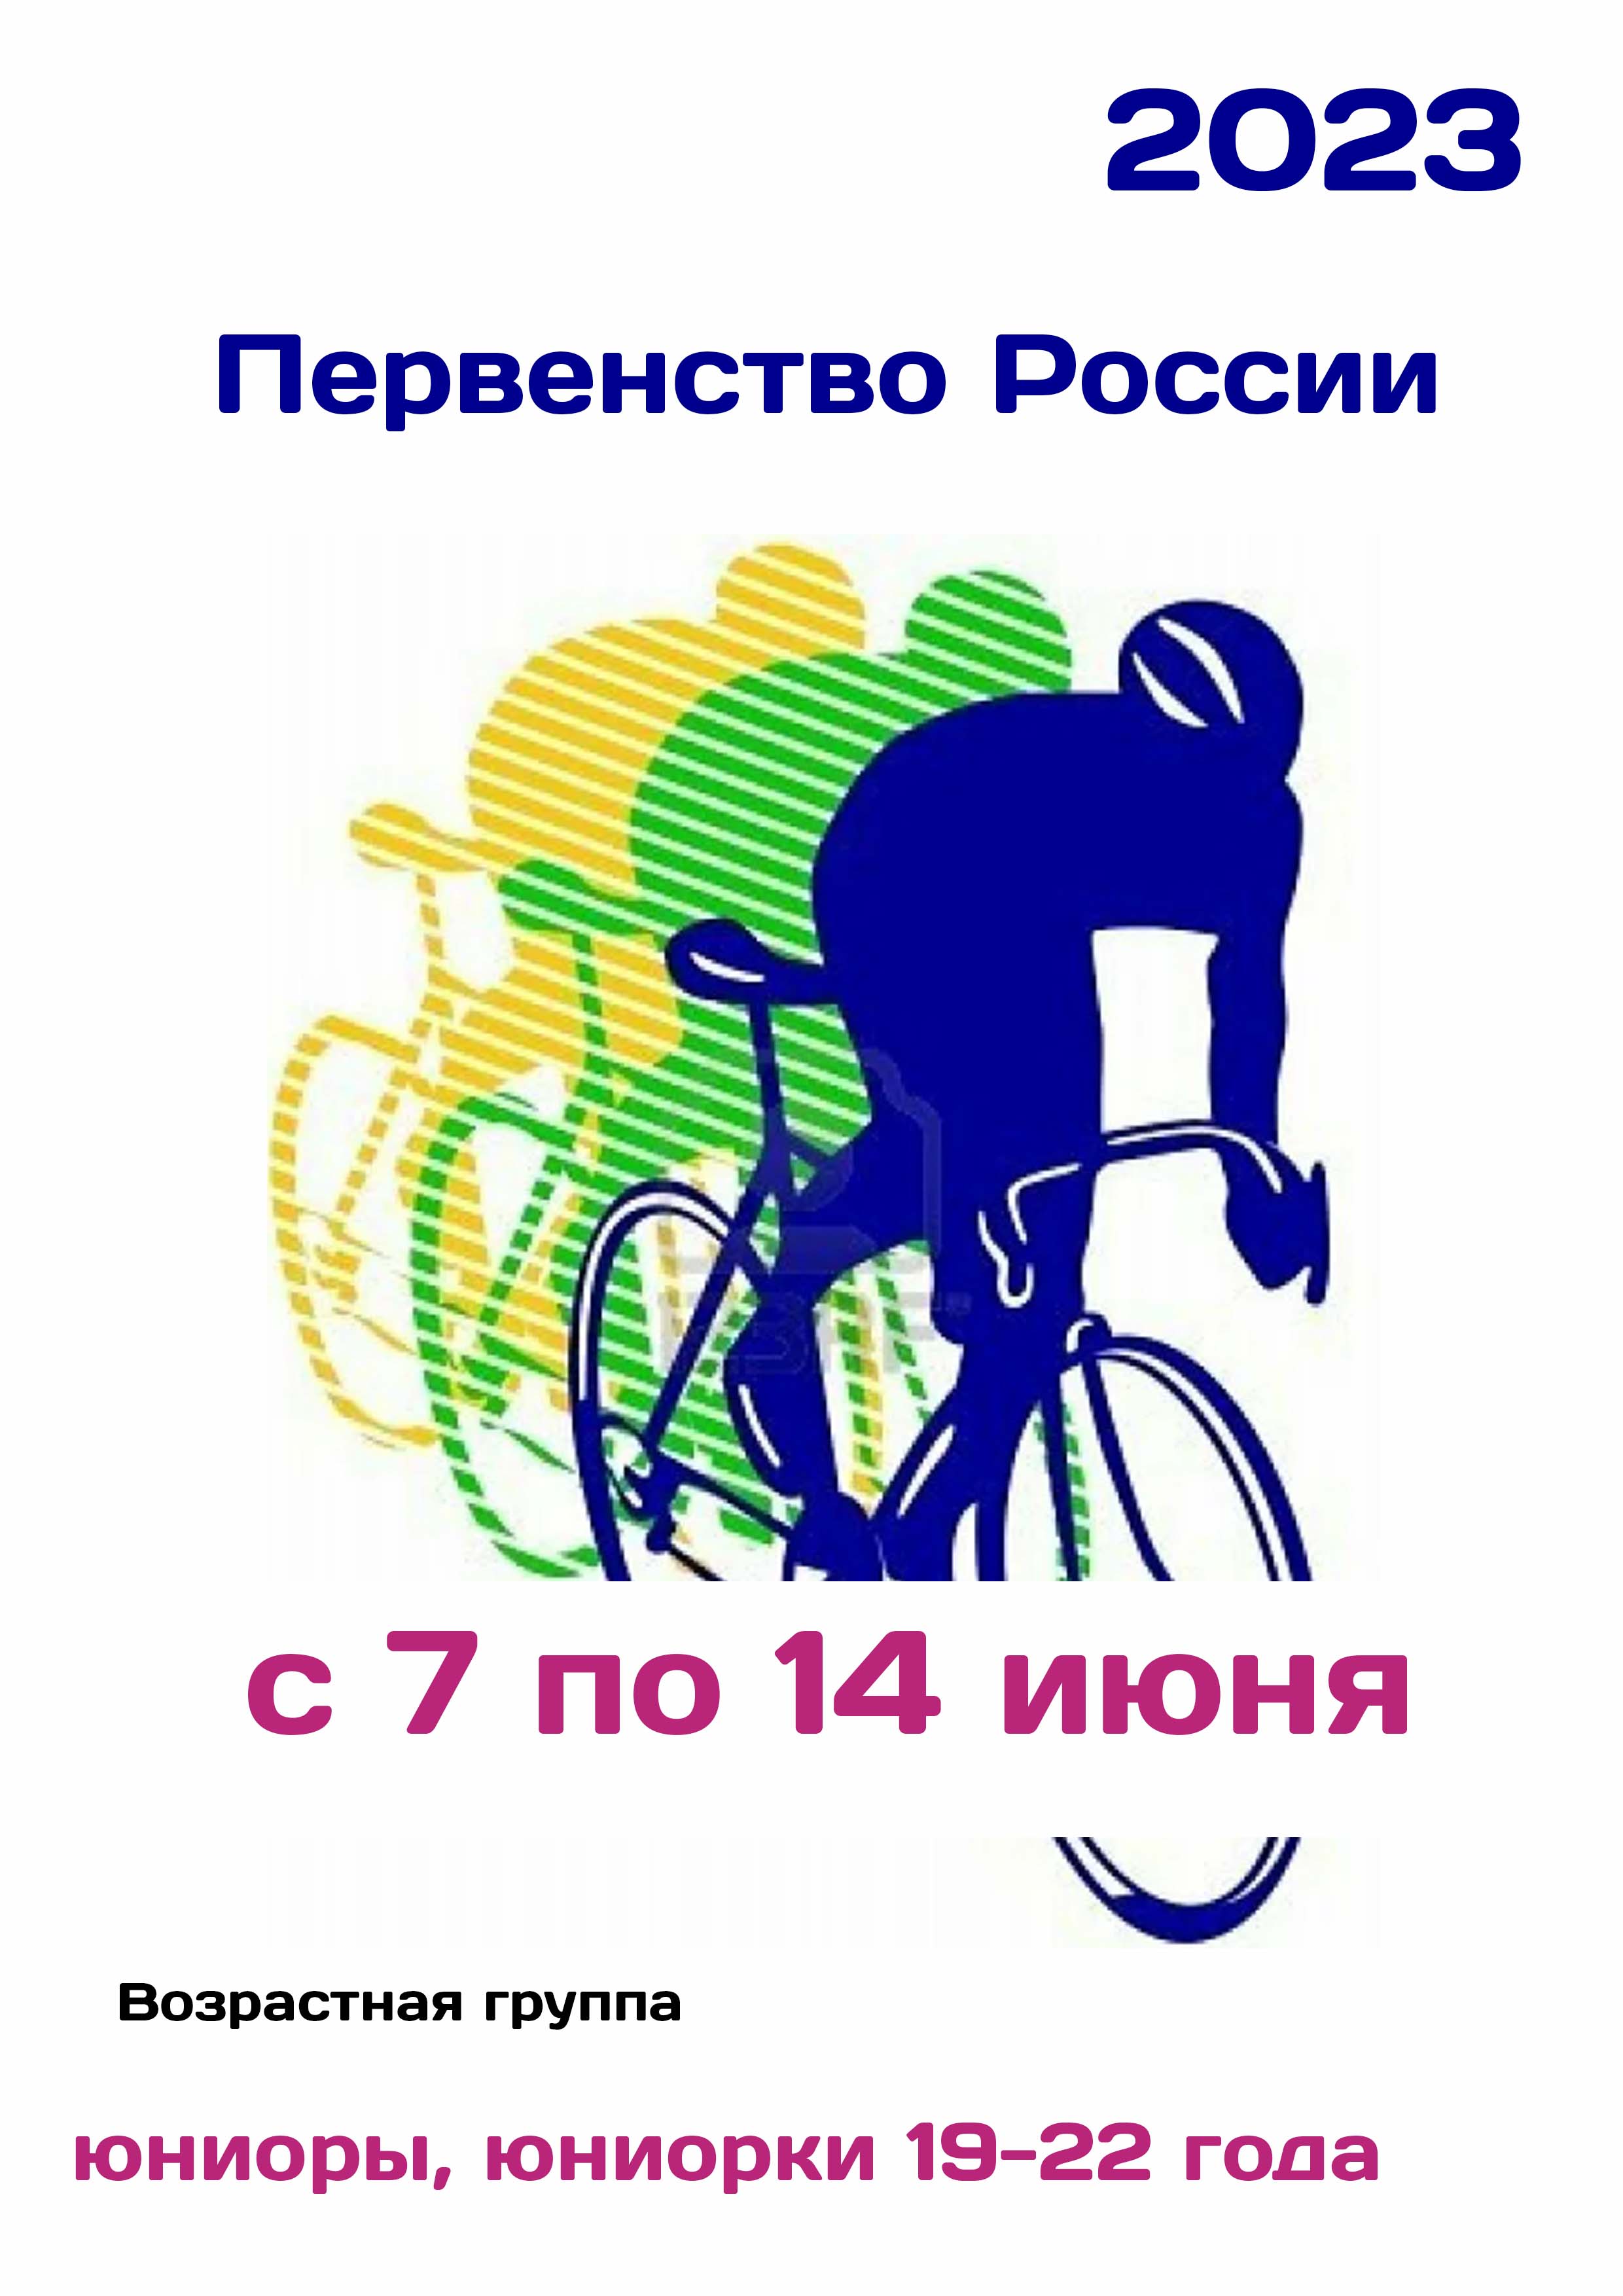 Первенство России по велоспорту 7  জুন এর
 2023  বছর
 